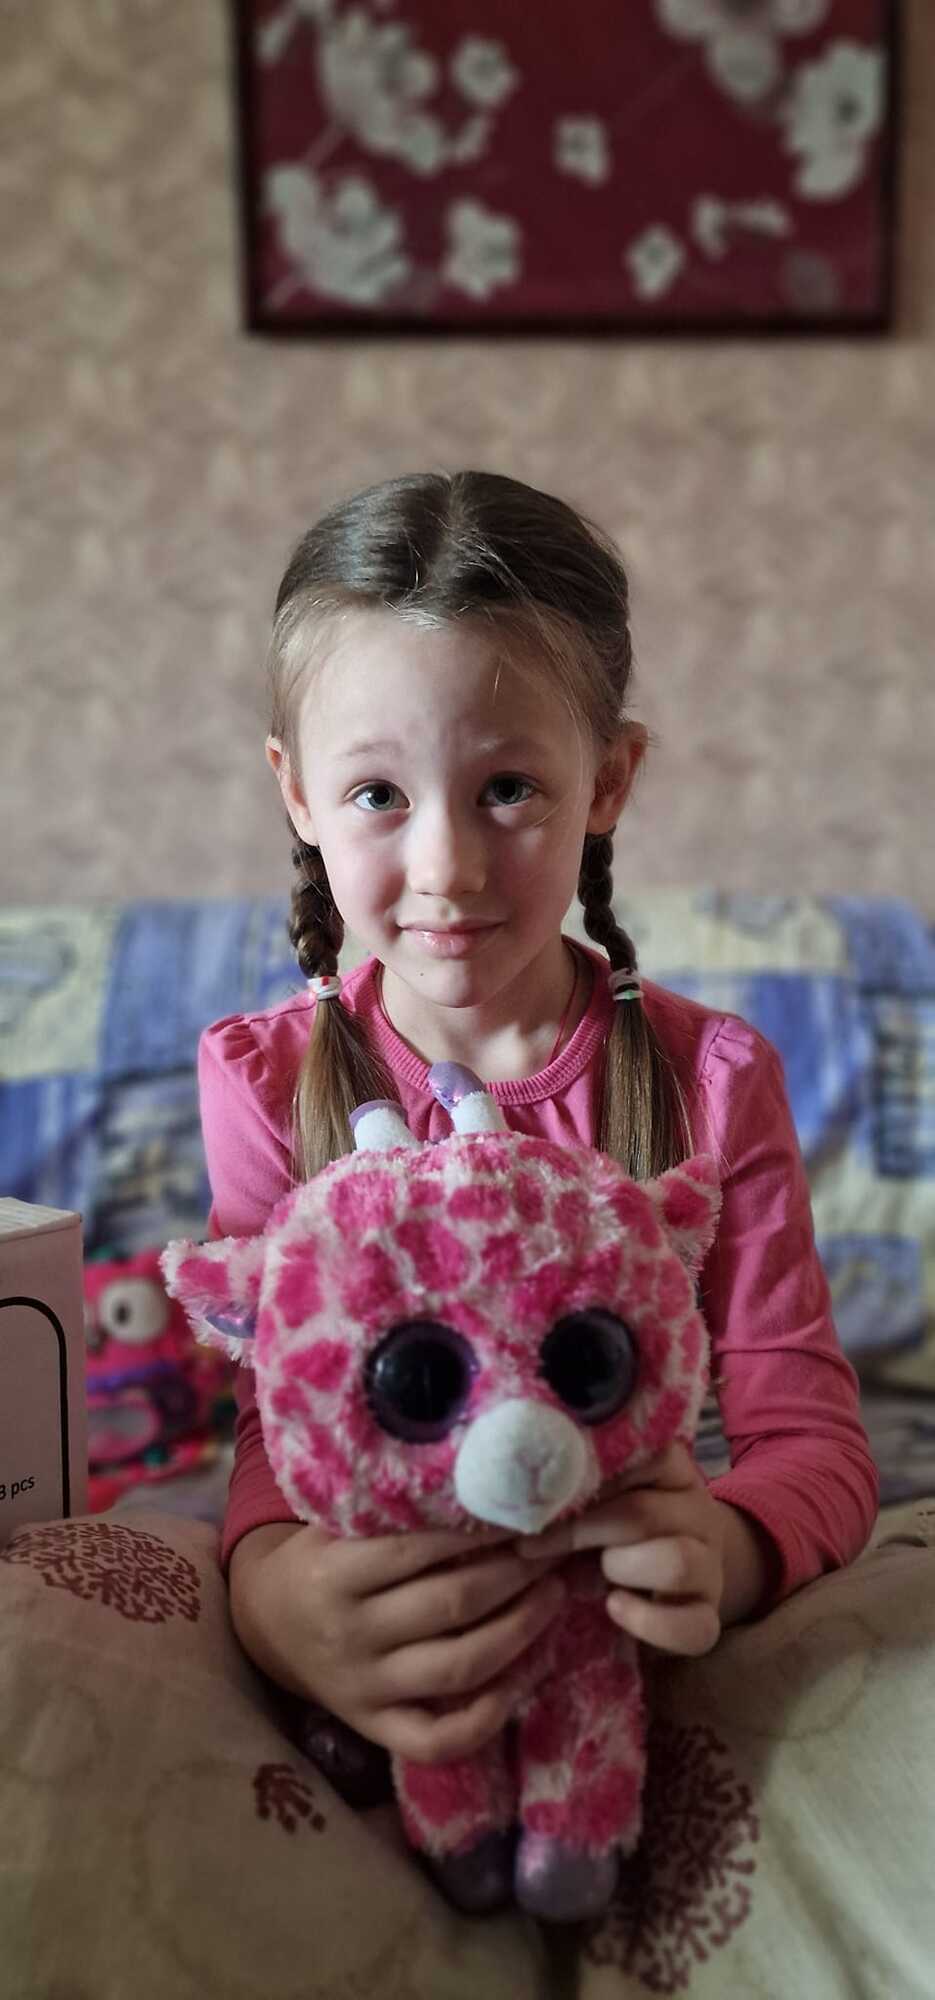 Родные 6-летней девочки не хотели покидать Авдеевку из-за старых родителей: подробности смерти Эли от сердечного приступа